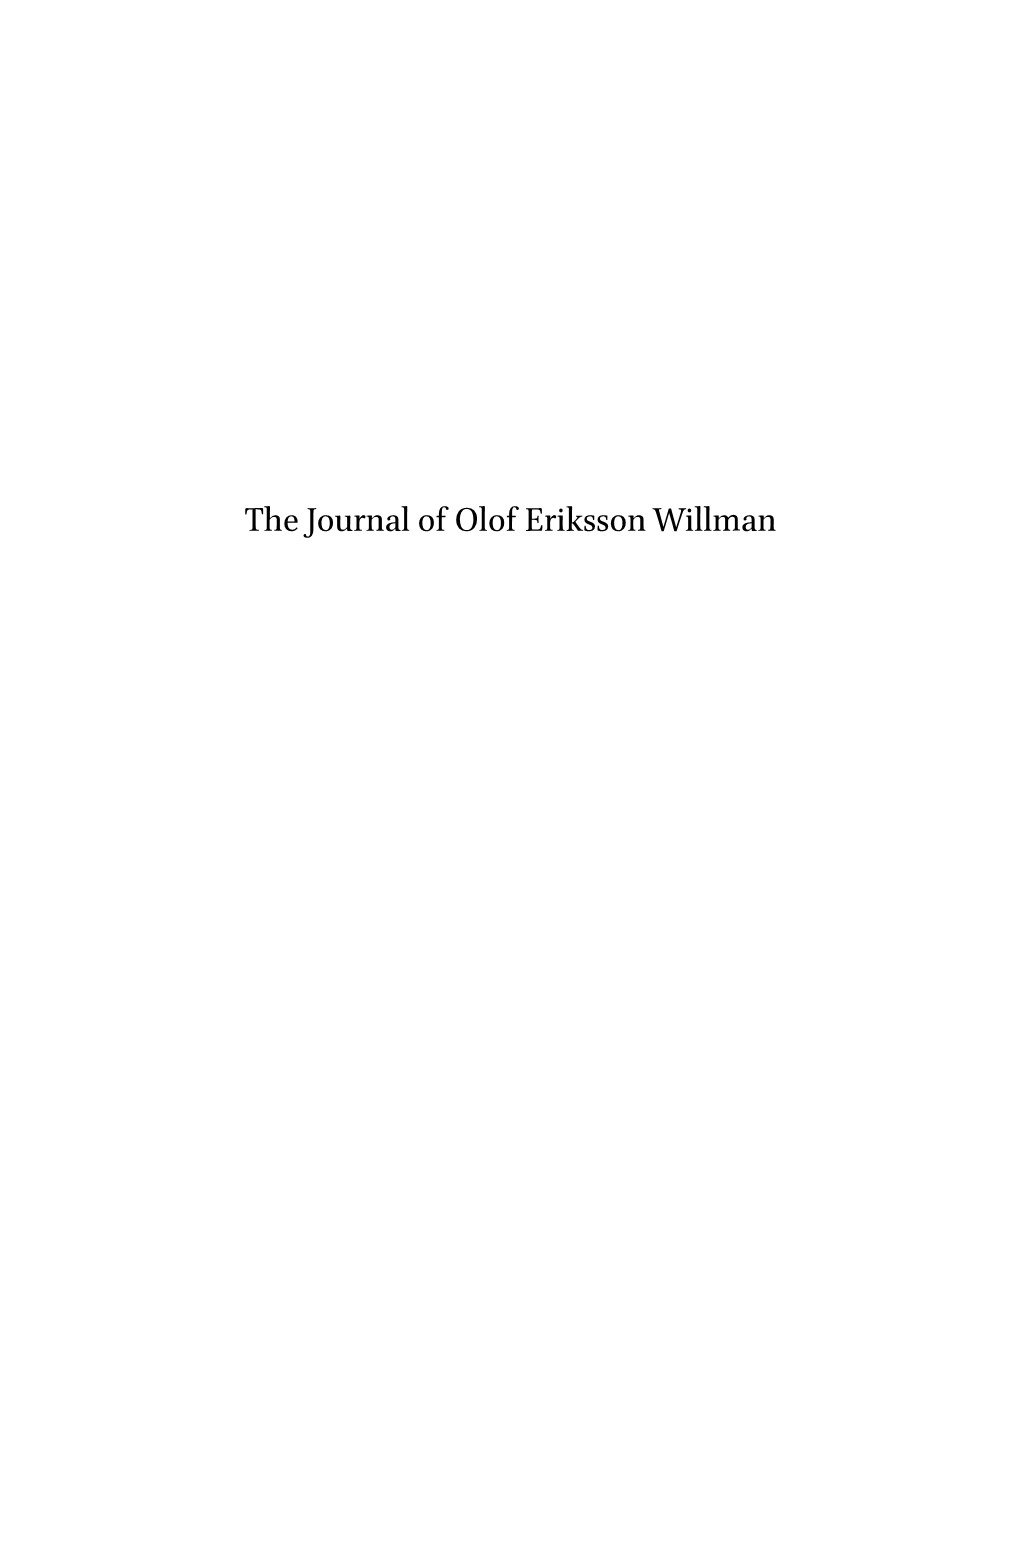 The Journal of Olof Eriksson Willman Signature of Olof Eriksson Willman